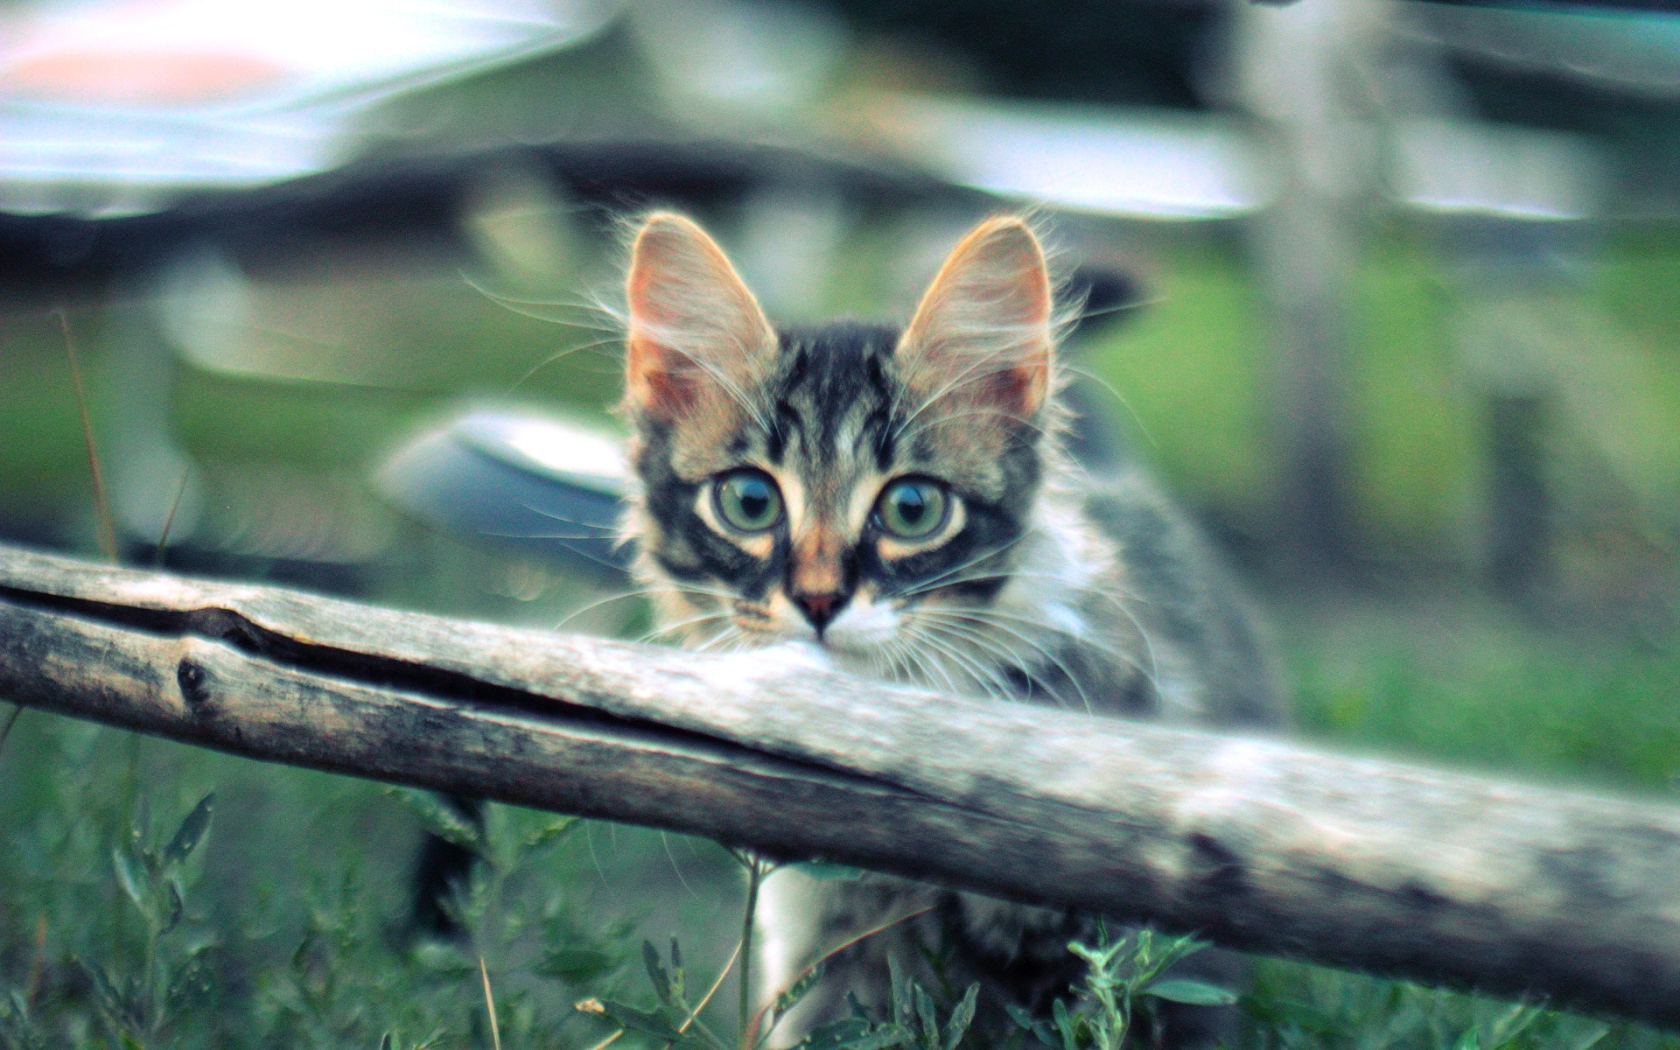 Котенок норвежской лесной кошки